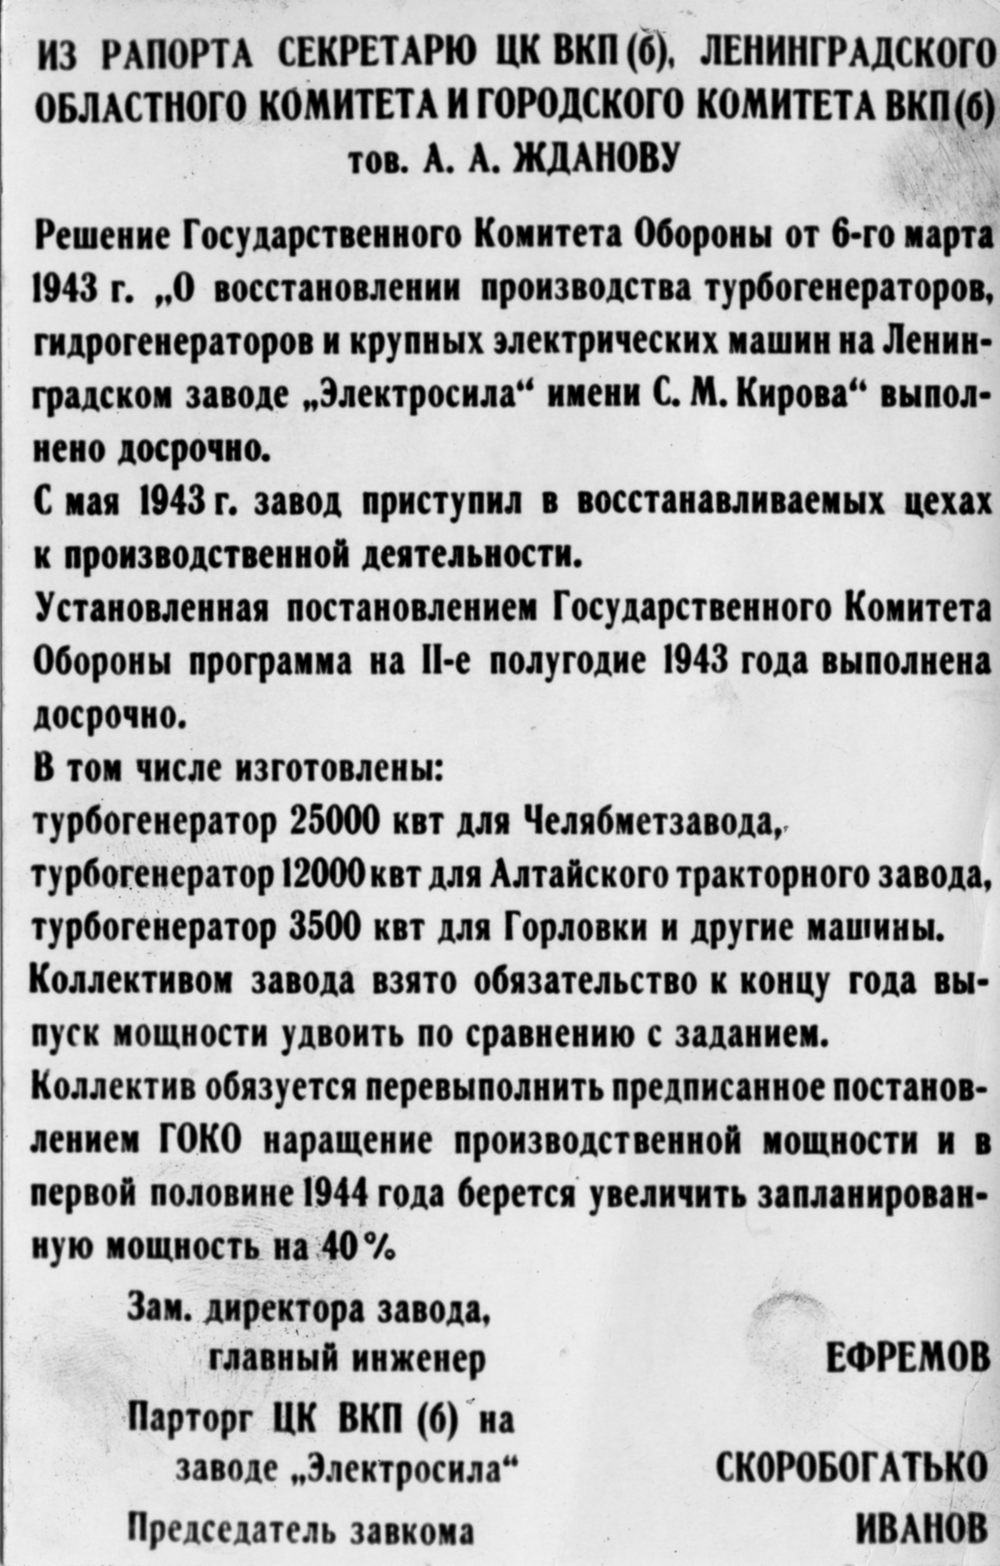 Рапорт А.А. Жданову. 1943 год